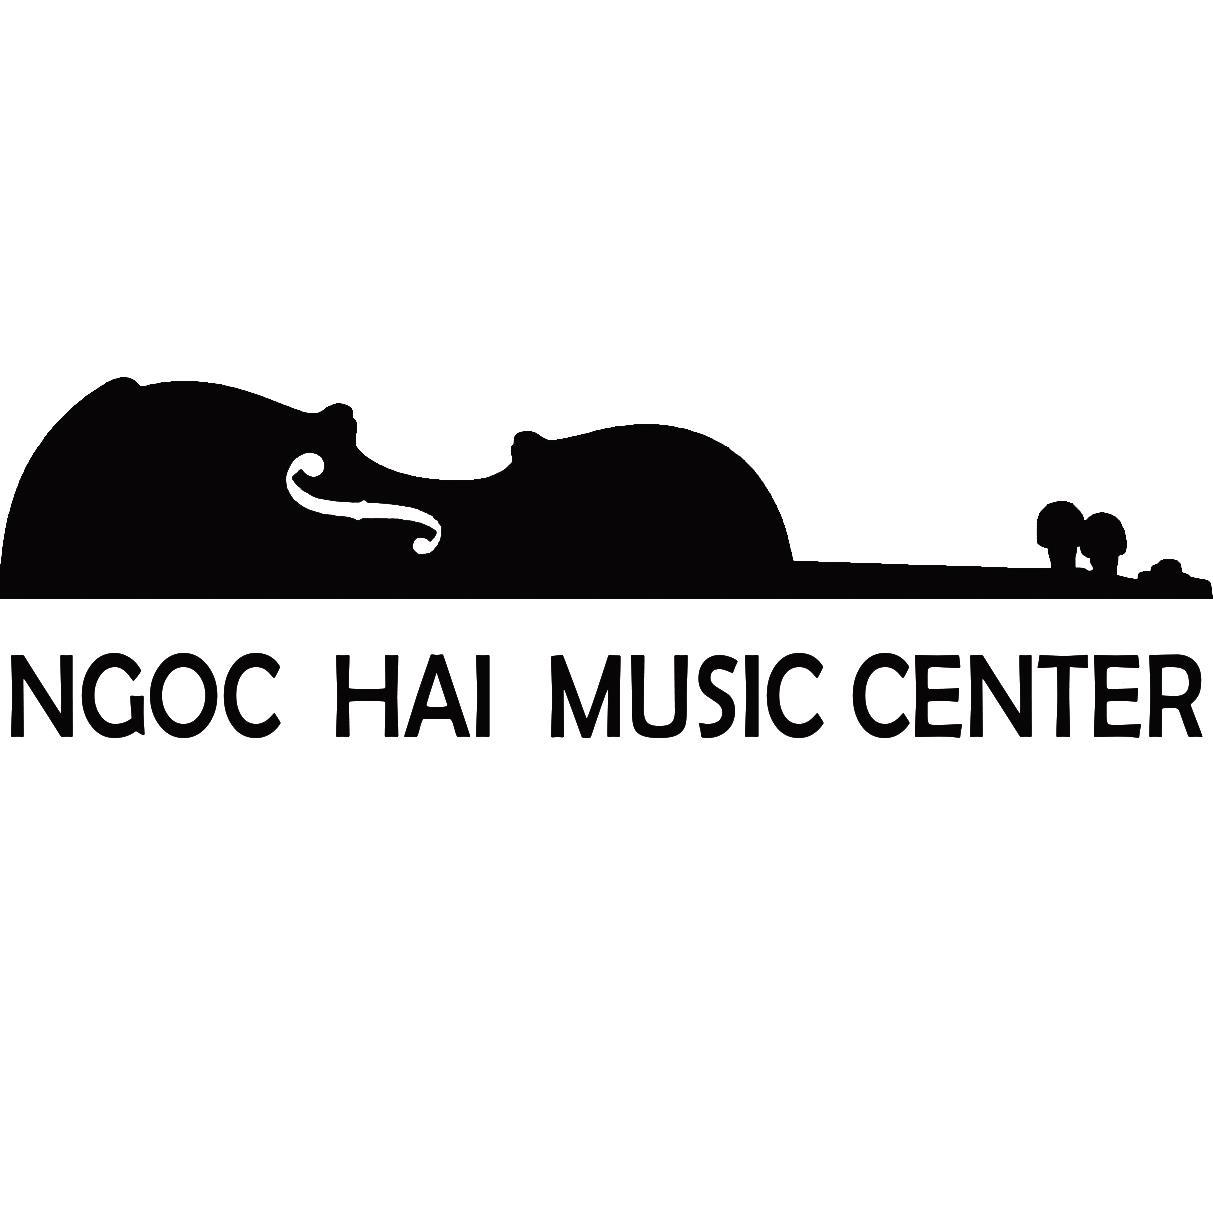 NgocHai MusicCenter